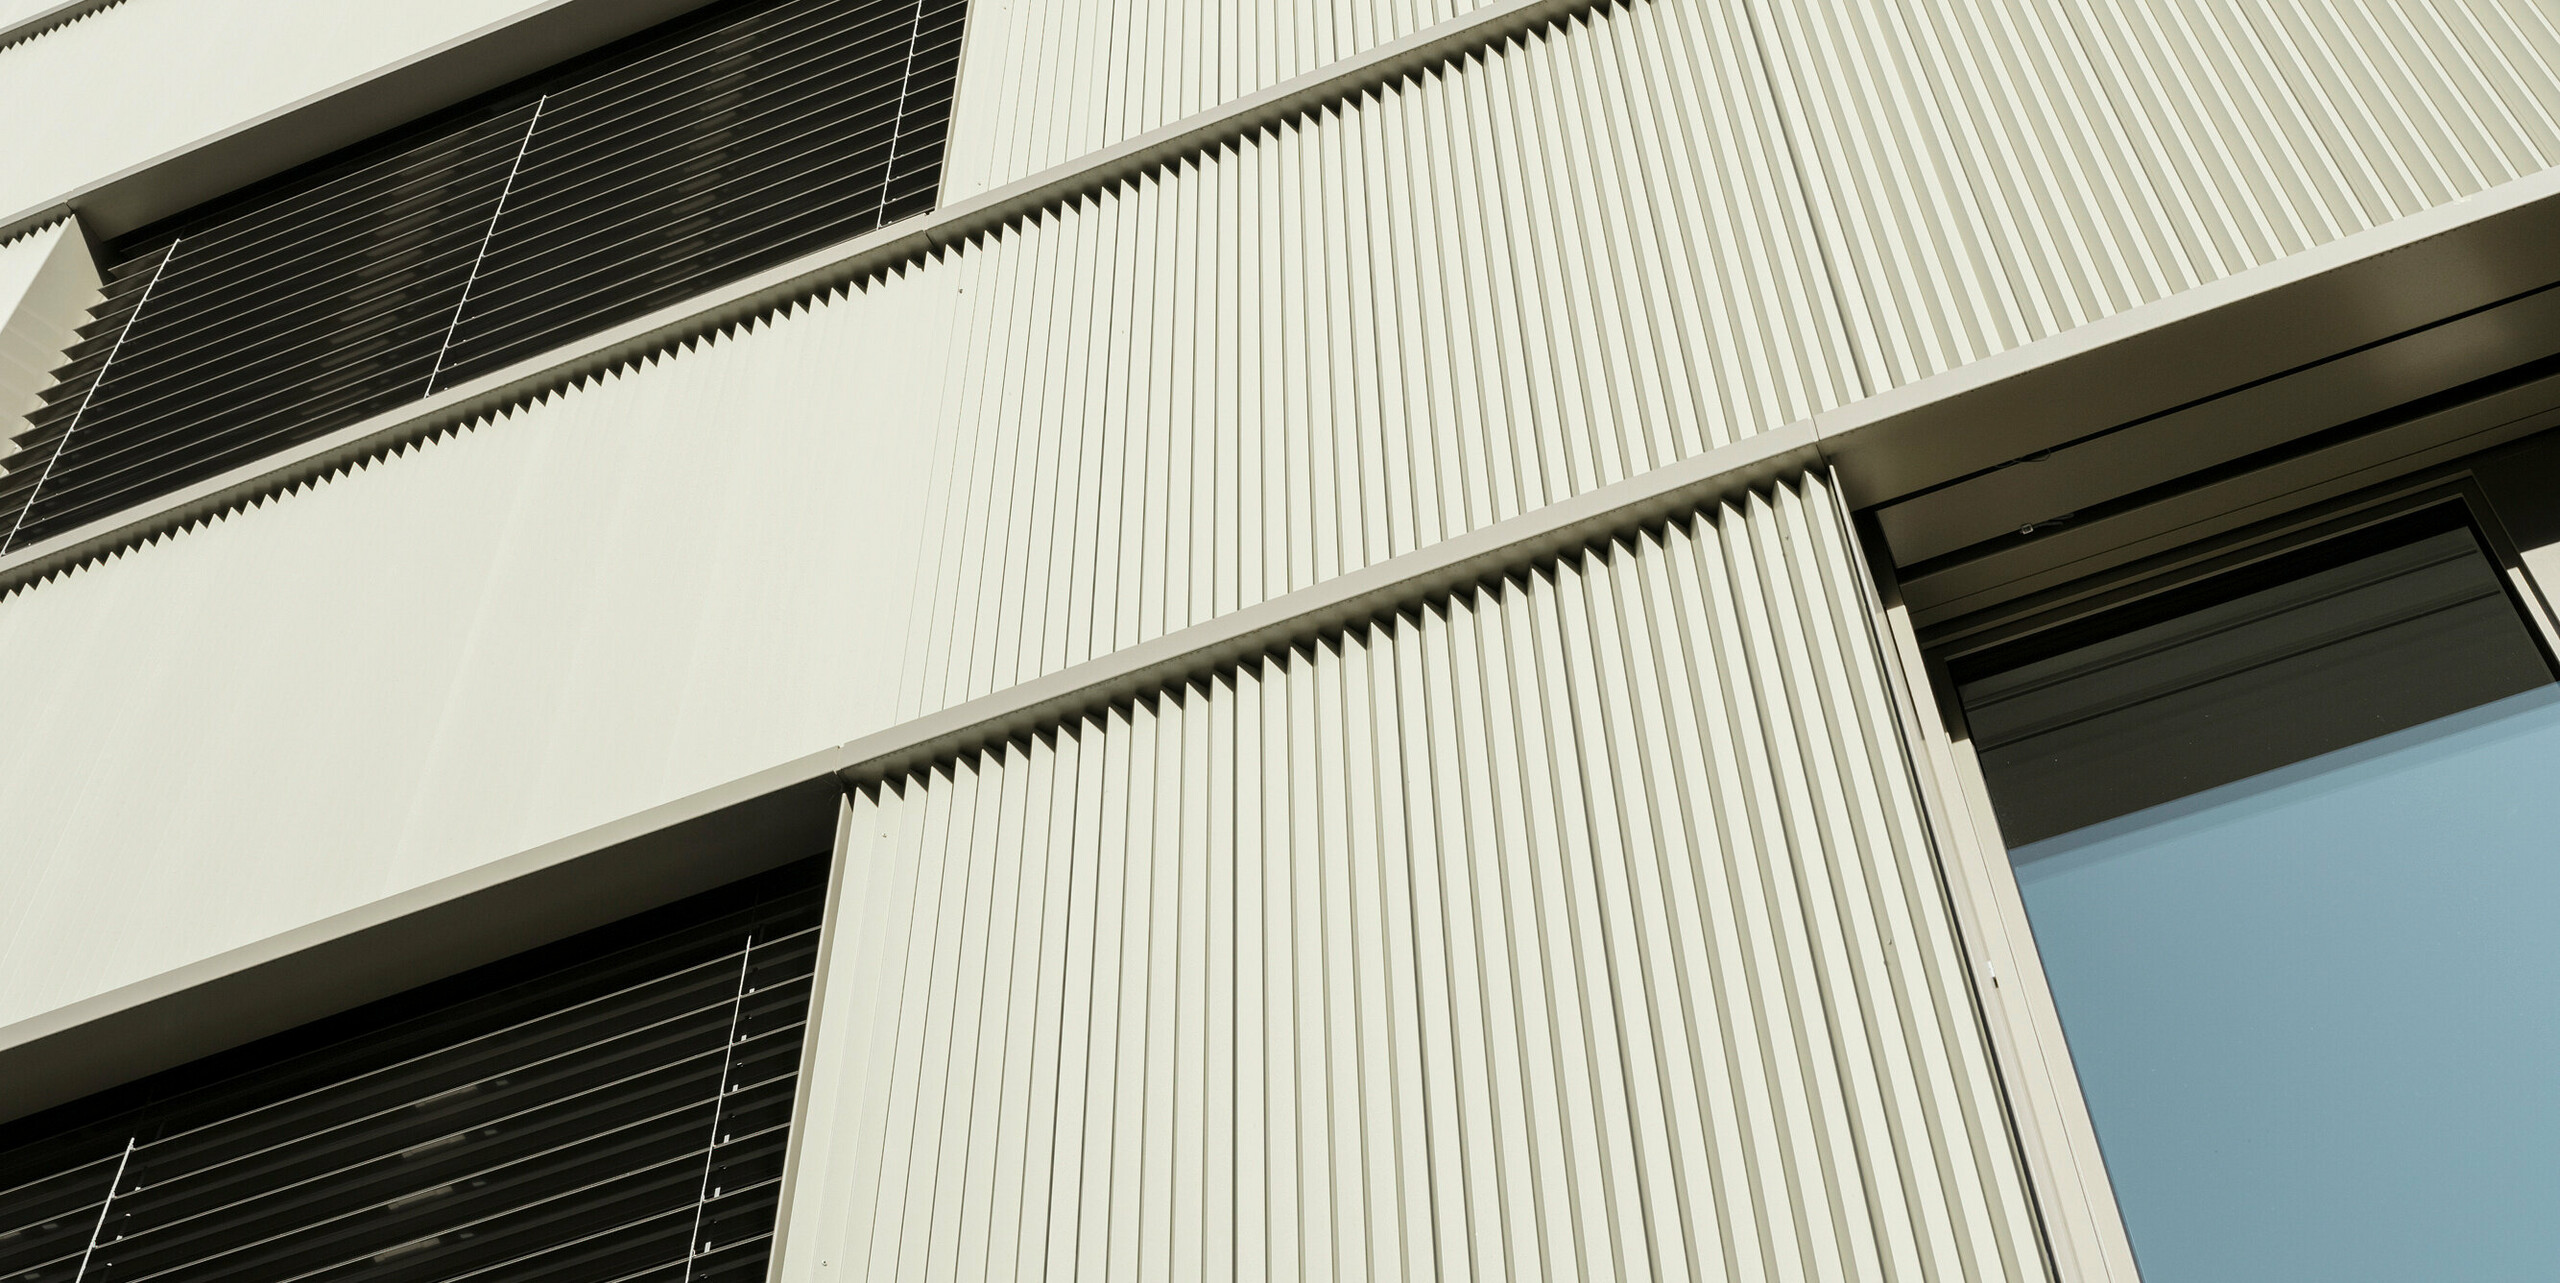 moderní fasádní profil z lisovaného hliníku – ideální souhra techniky a architektonické tvorby